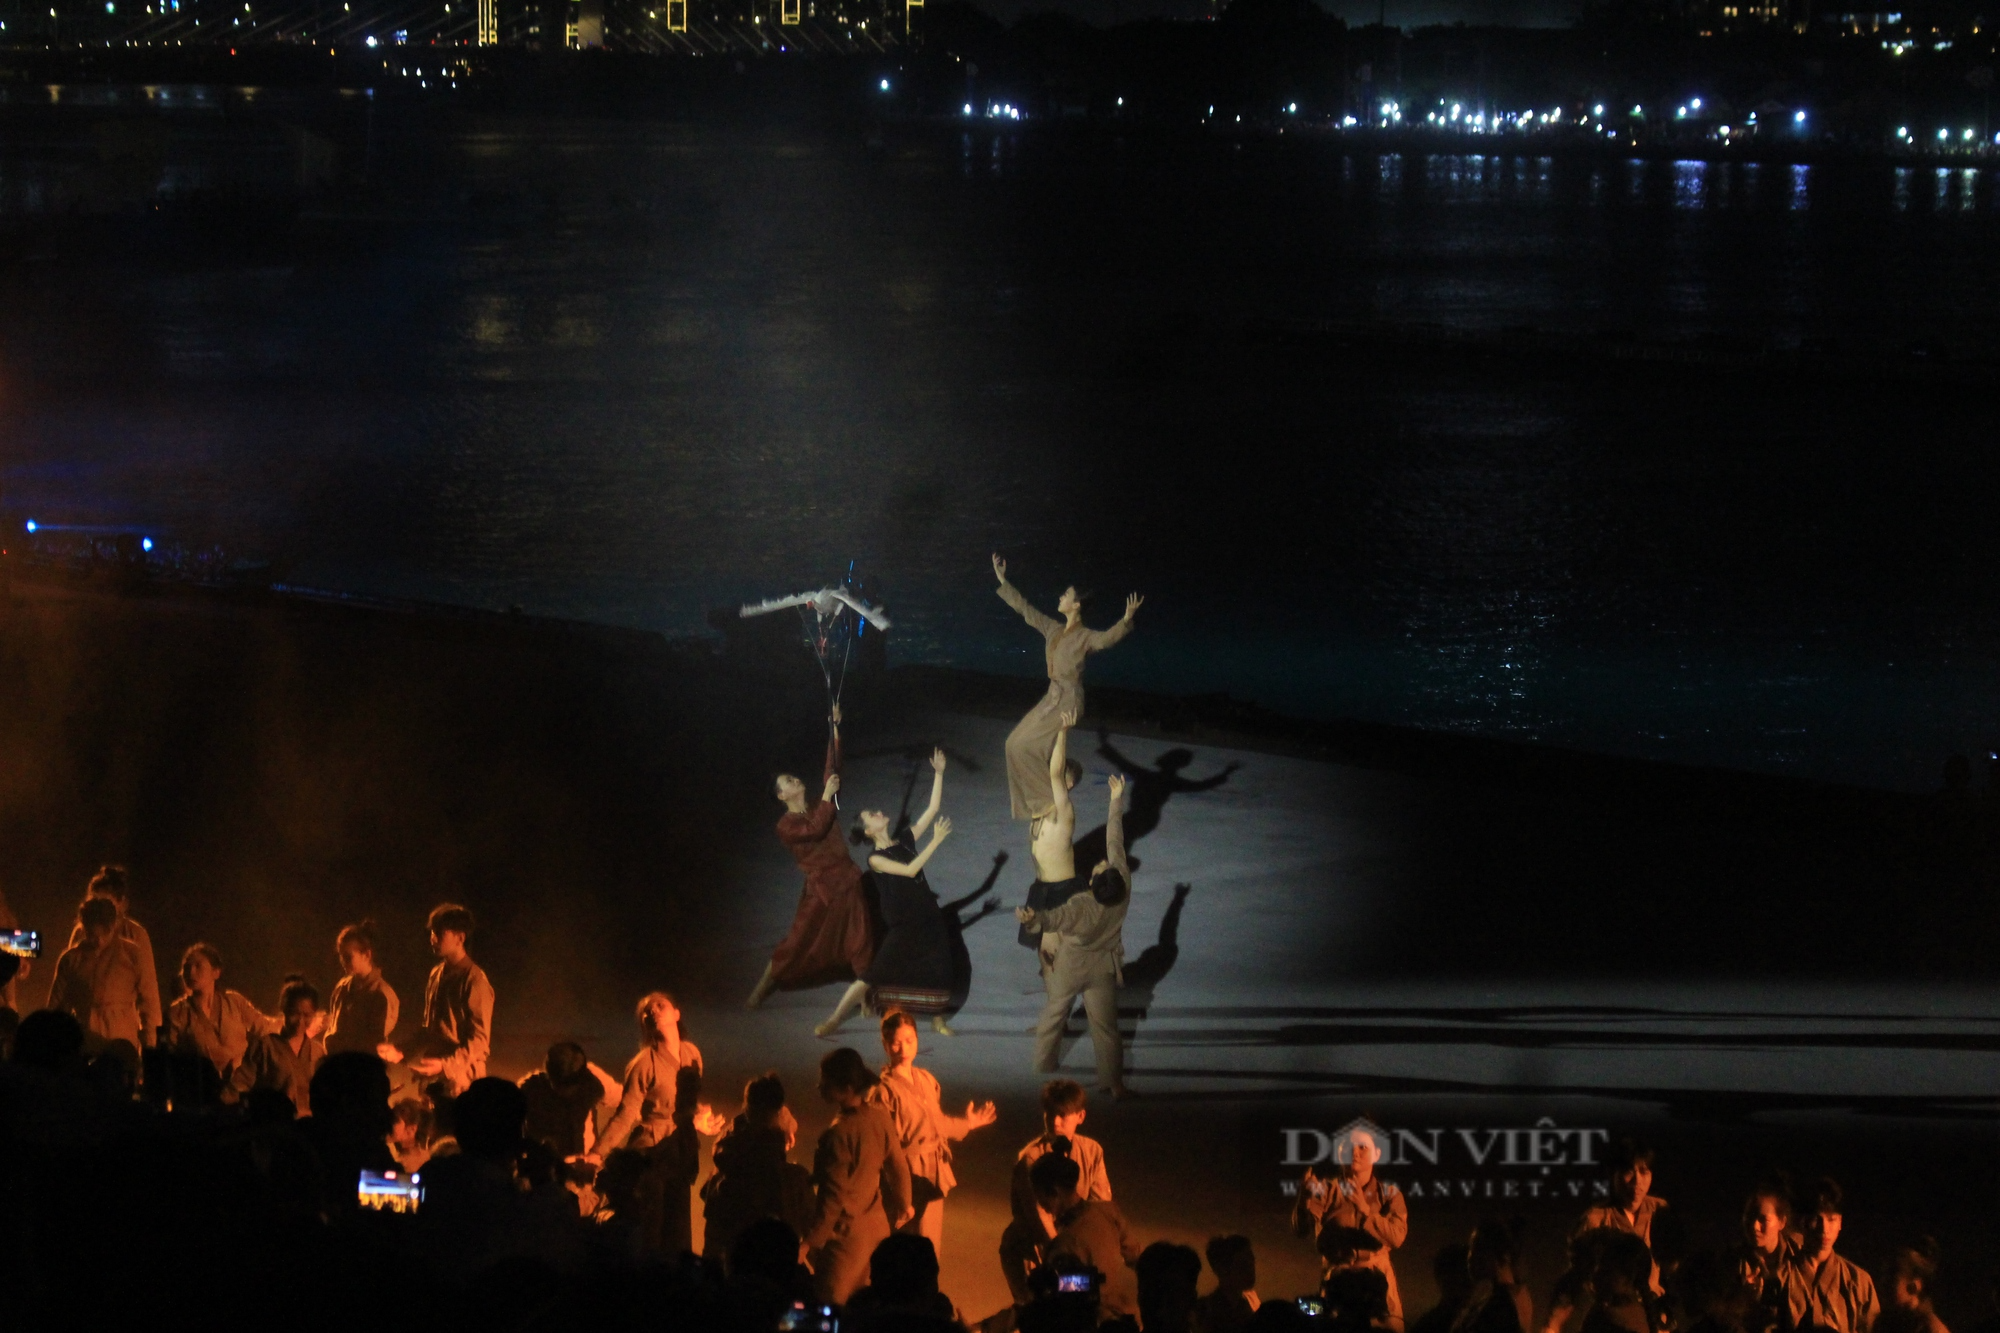 Mãn nhãn đêm nghệ thuật Dòng sông kể chuyện, 700 diễn viên biểu diễn trên sông Sài Gòn - Ảnh 3.